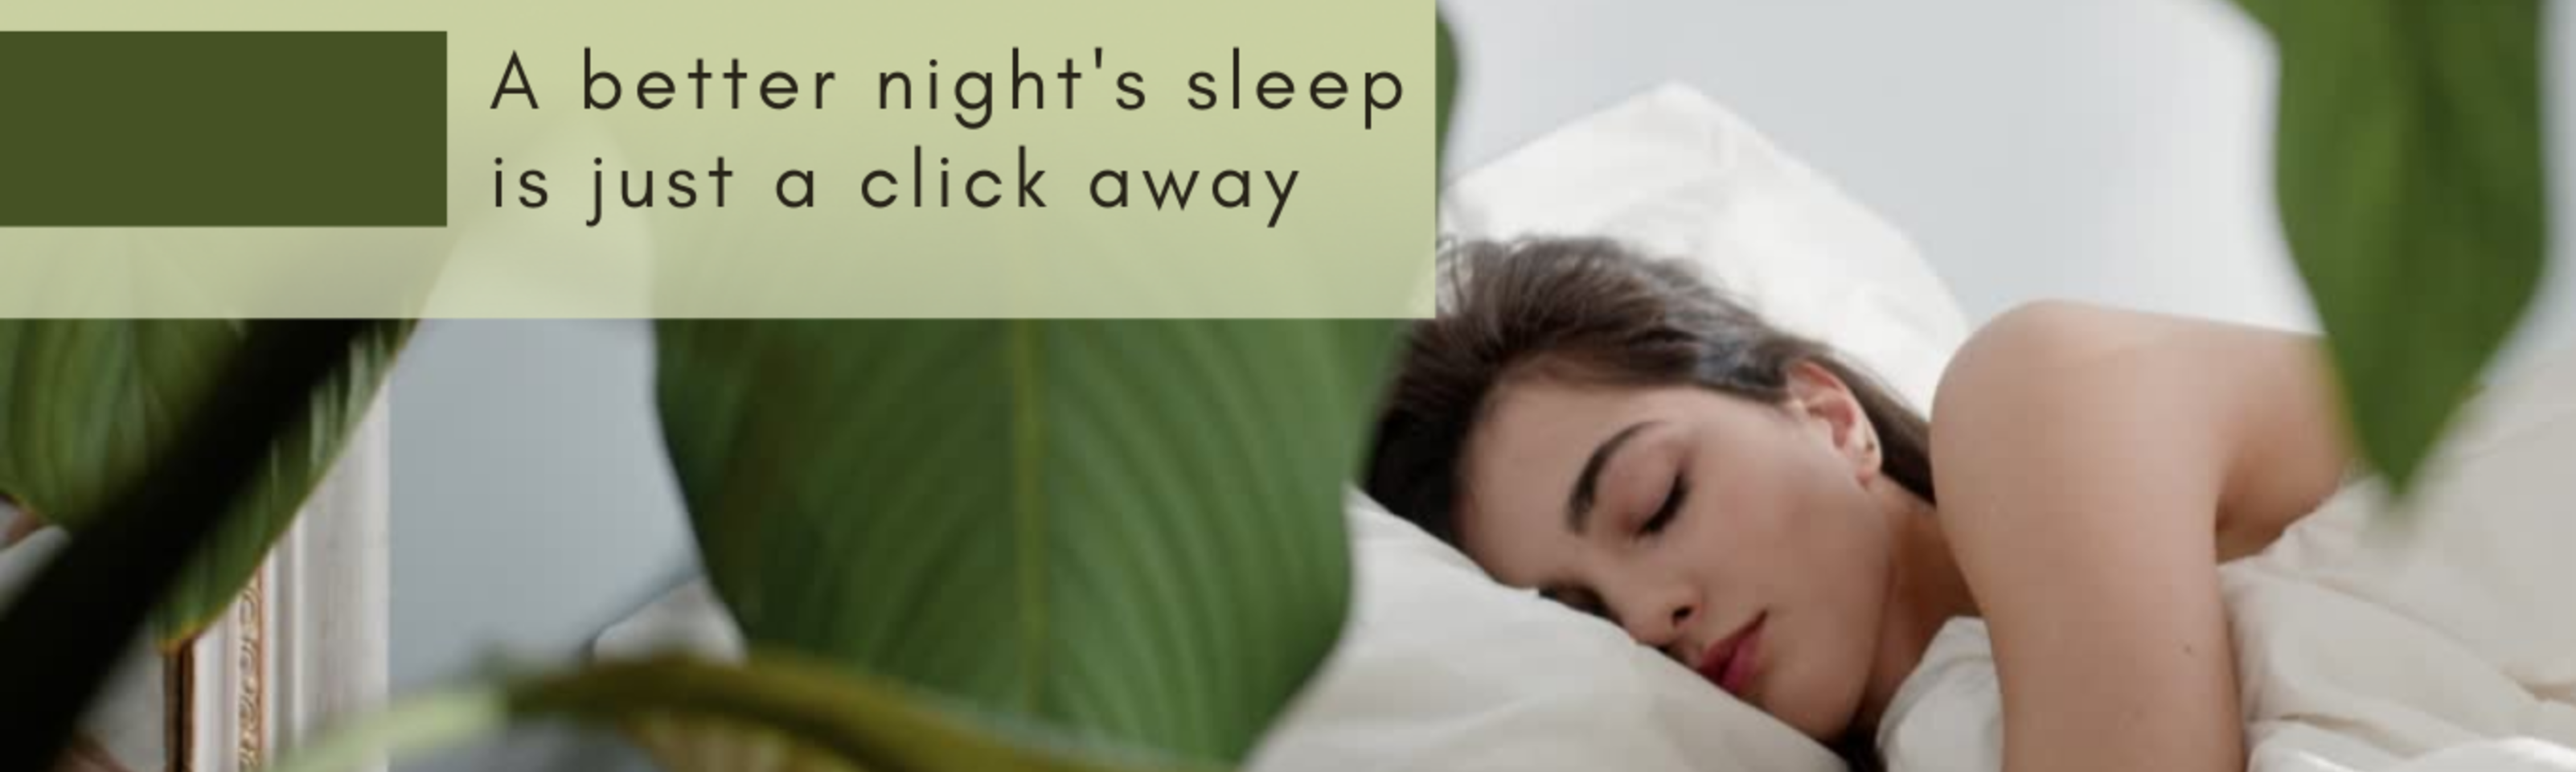 Get a better night's sleep